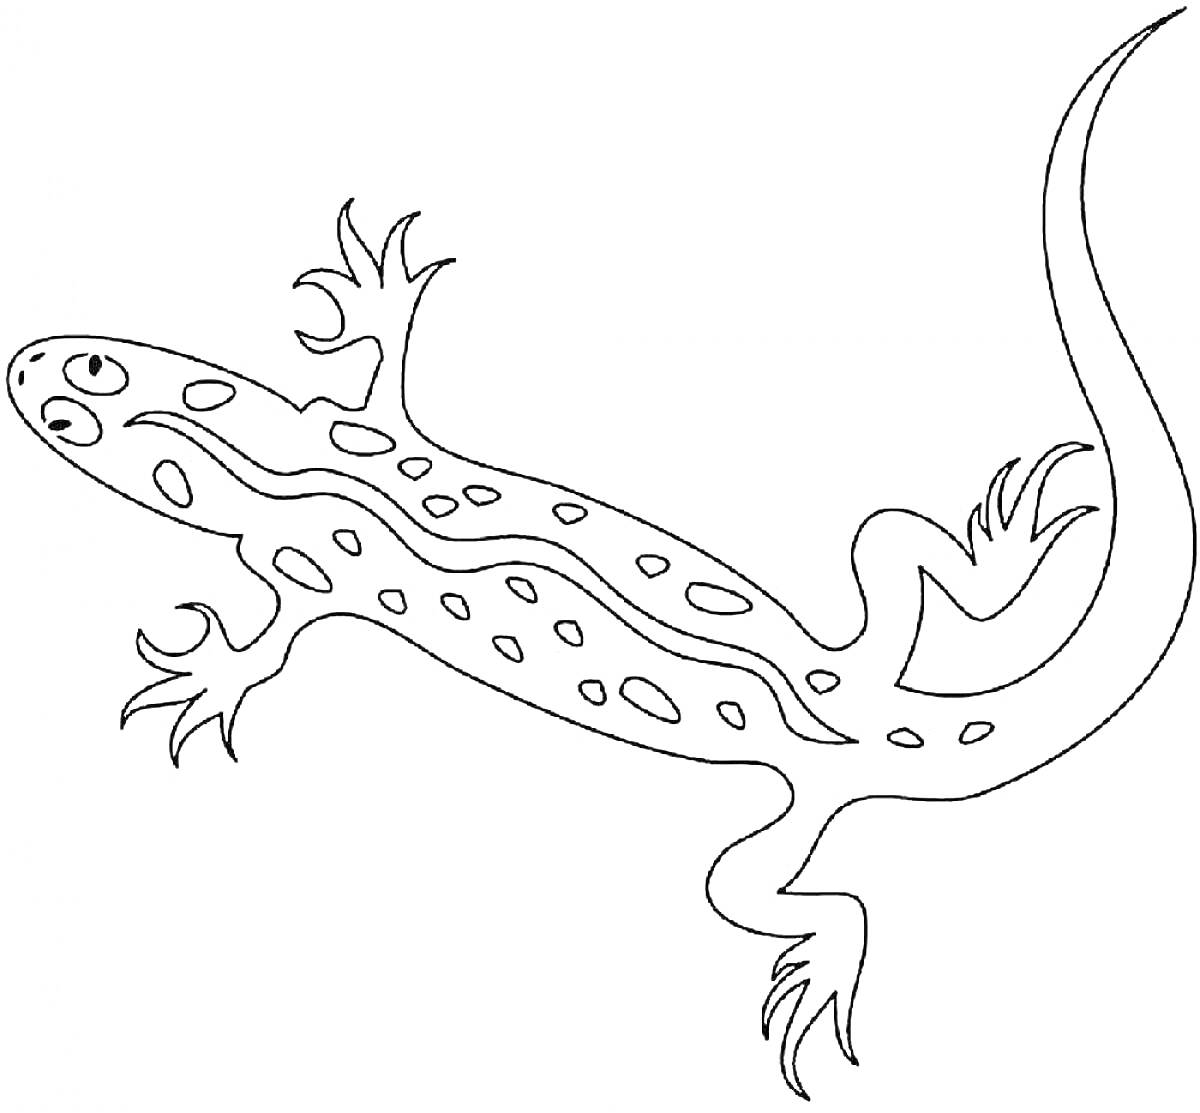 Ящерица с пятнистым узором, с четырьмя лапами и длинным изогнутым хвостом